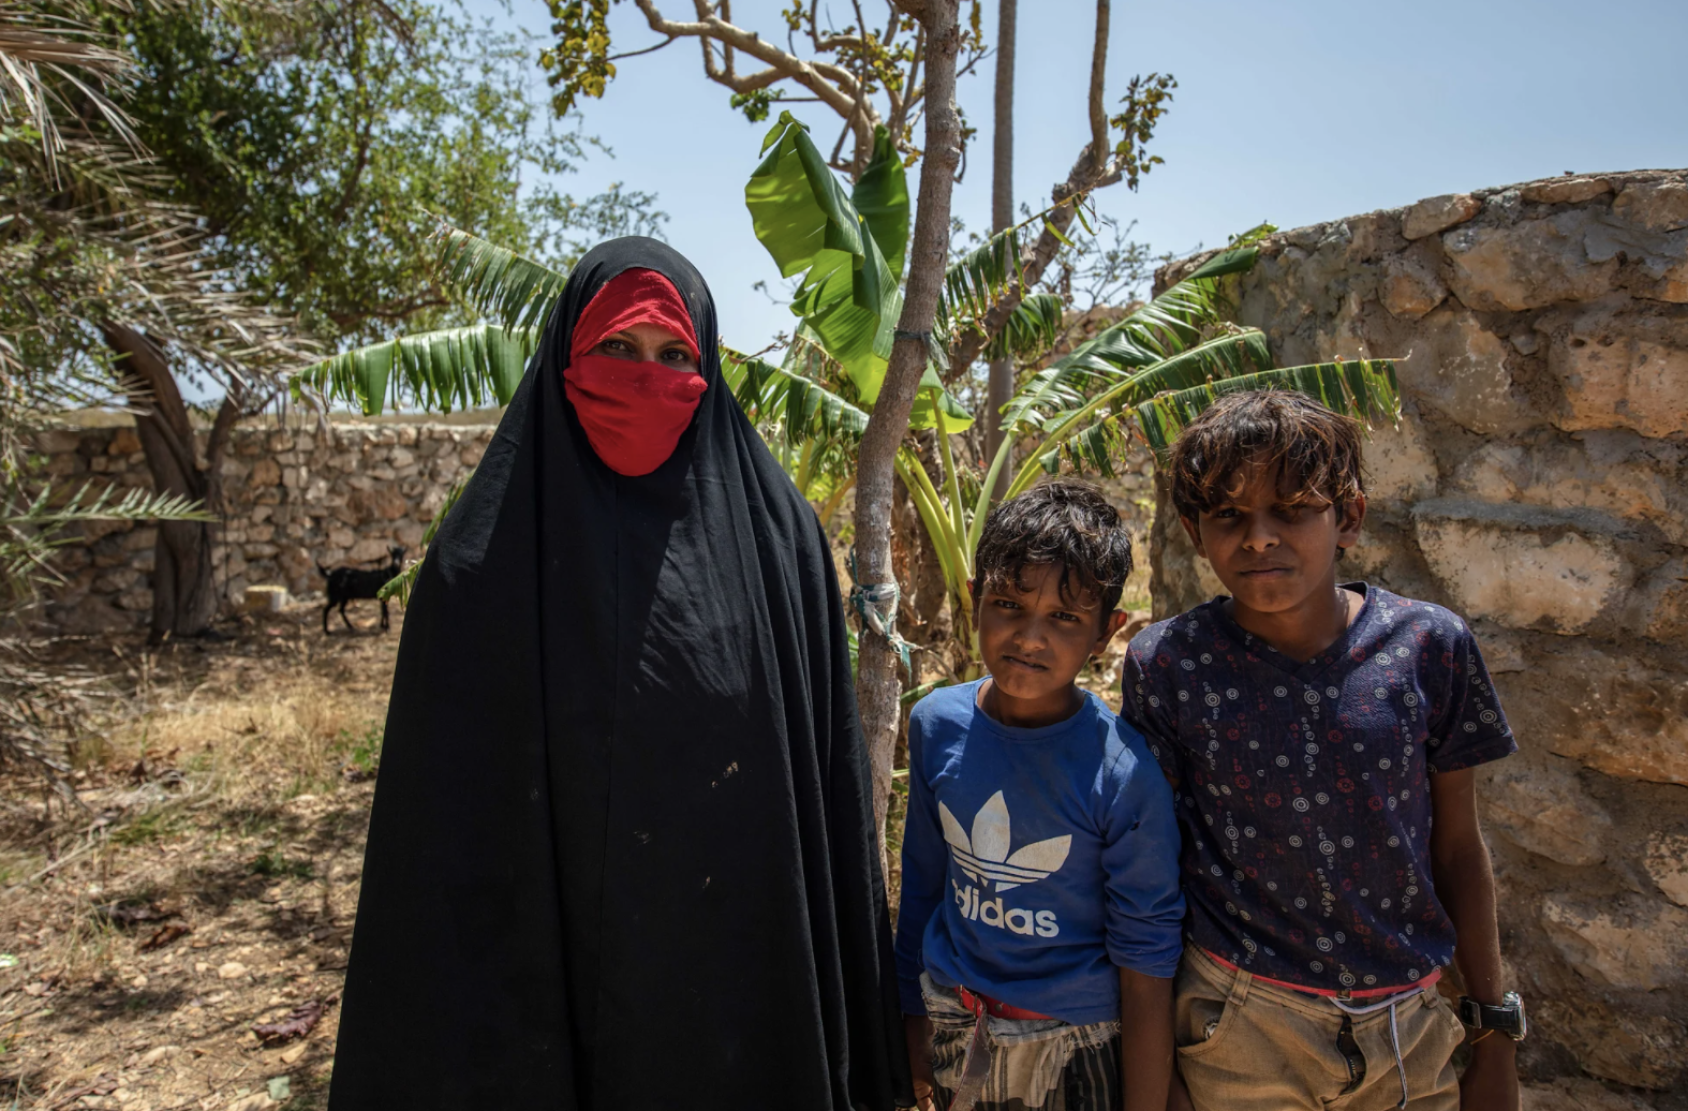 امرأة بالحجاب الأسود والأحمر تقف بجانب طفلين يرتديان قمصانًا زرقاء.